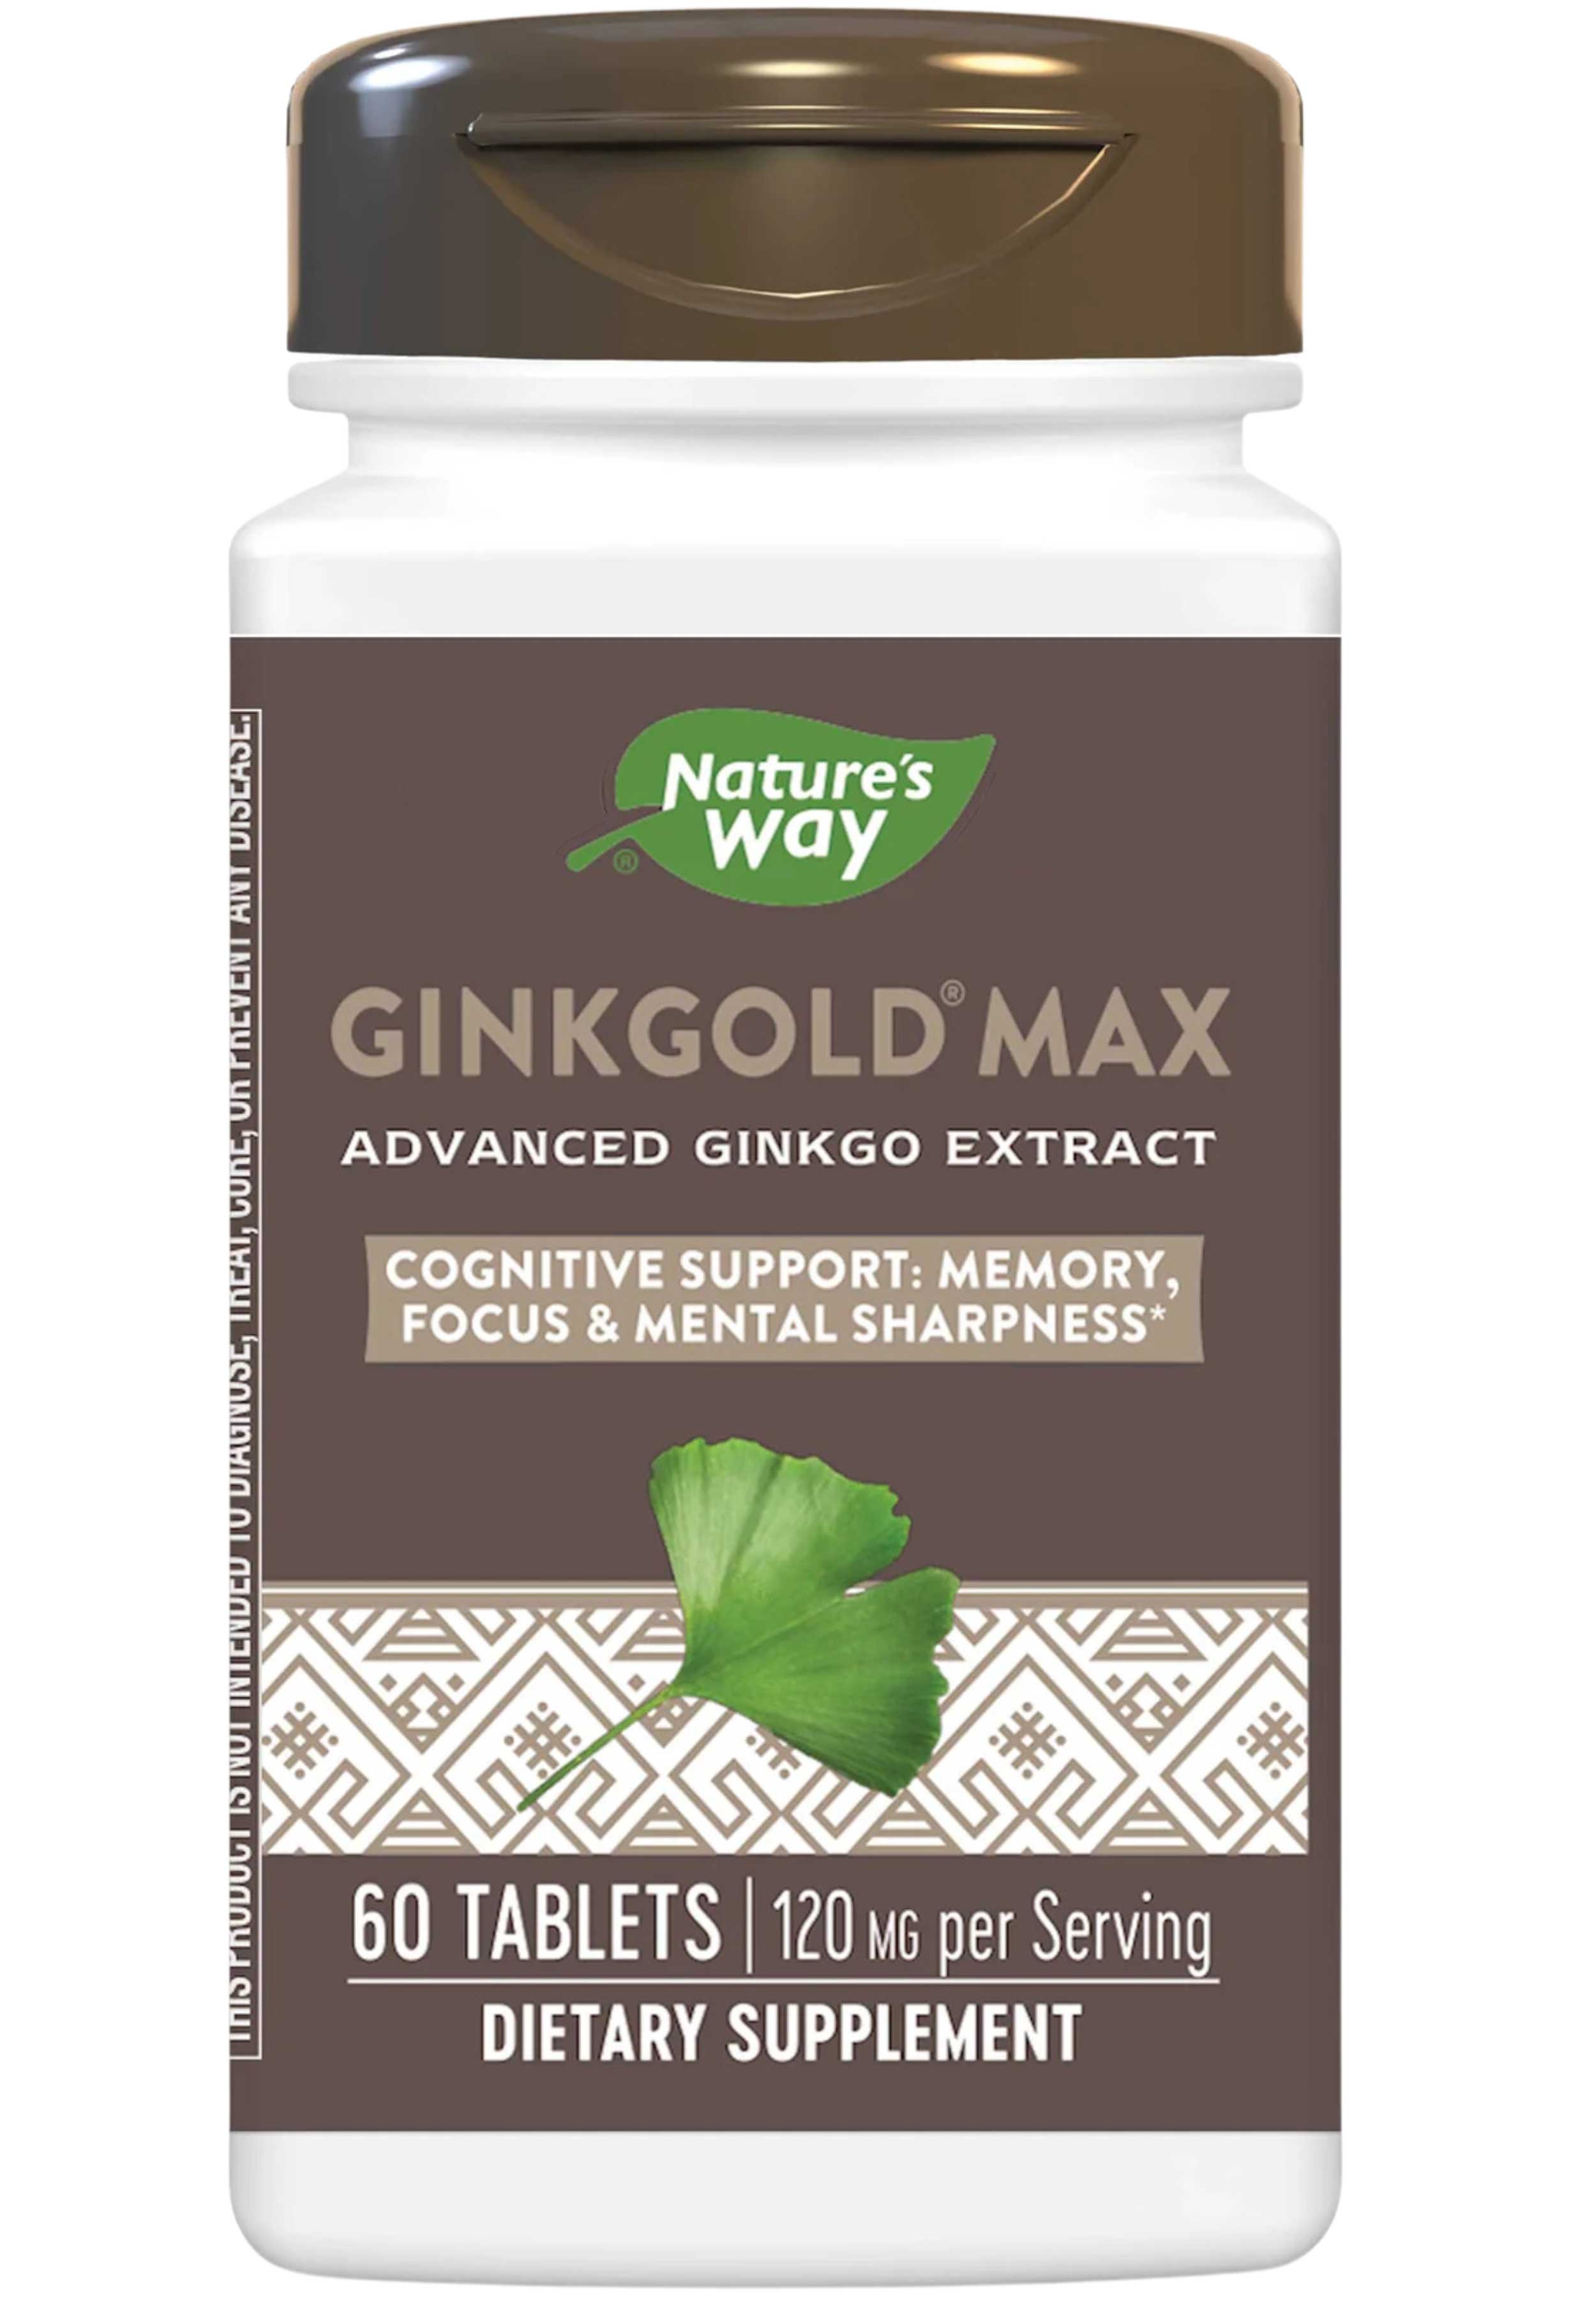 Nature's Way Ginkgold Max 120 mg